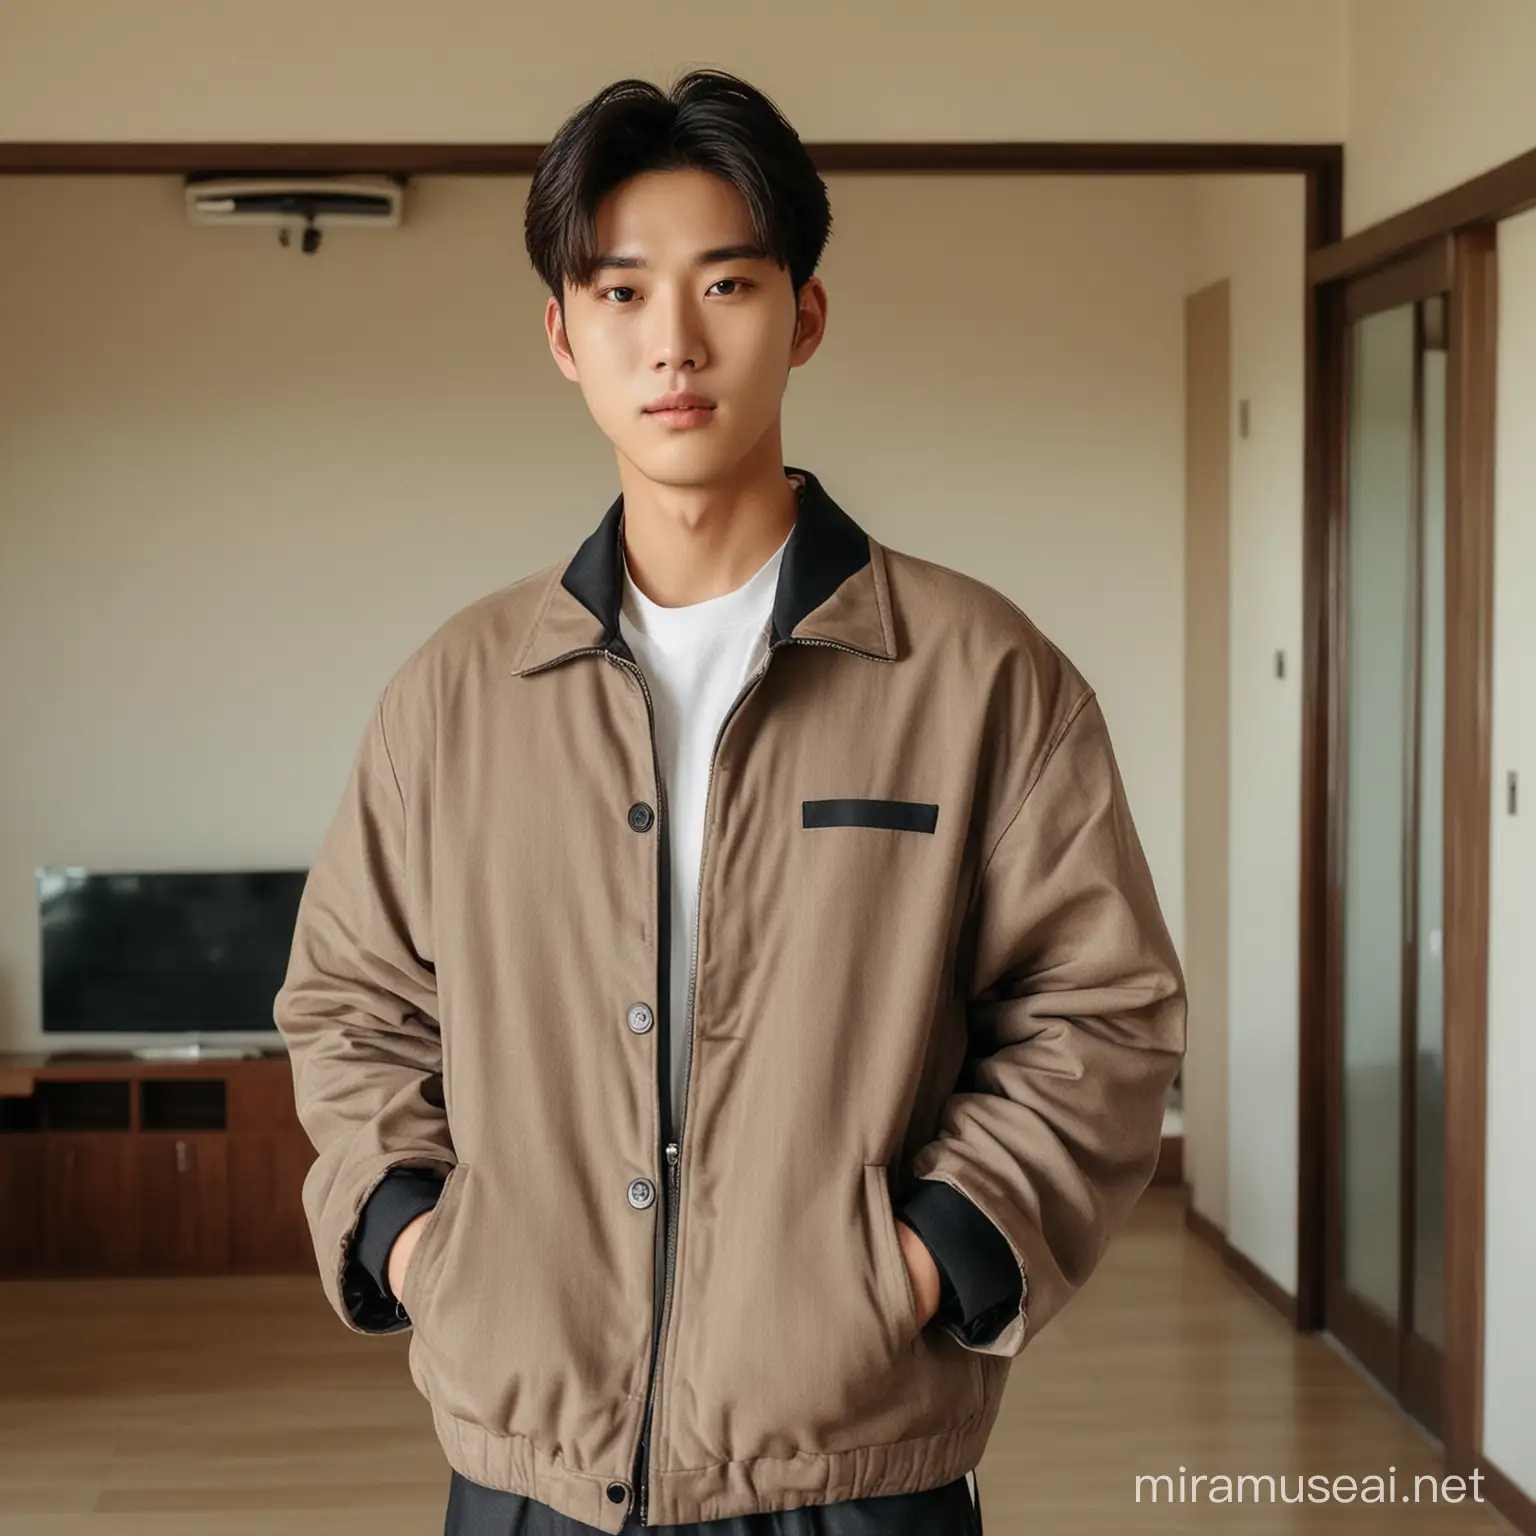 Seorang pria muda korea berwajah handsome sedang berdiri dengan memakai jaket rapih didalam rumah